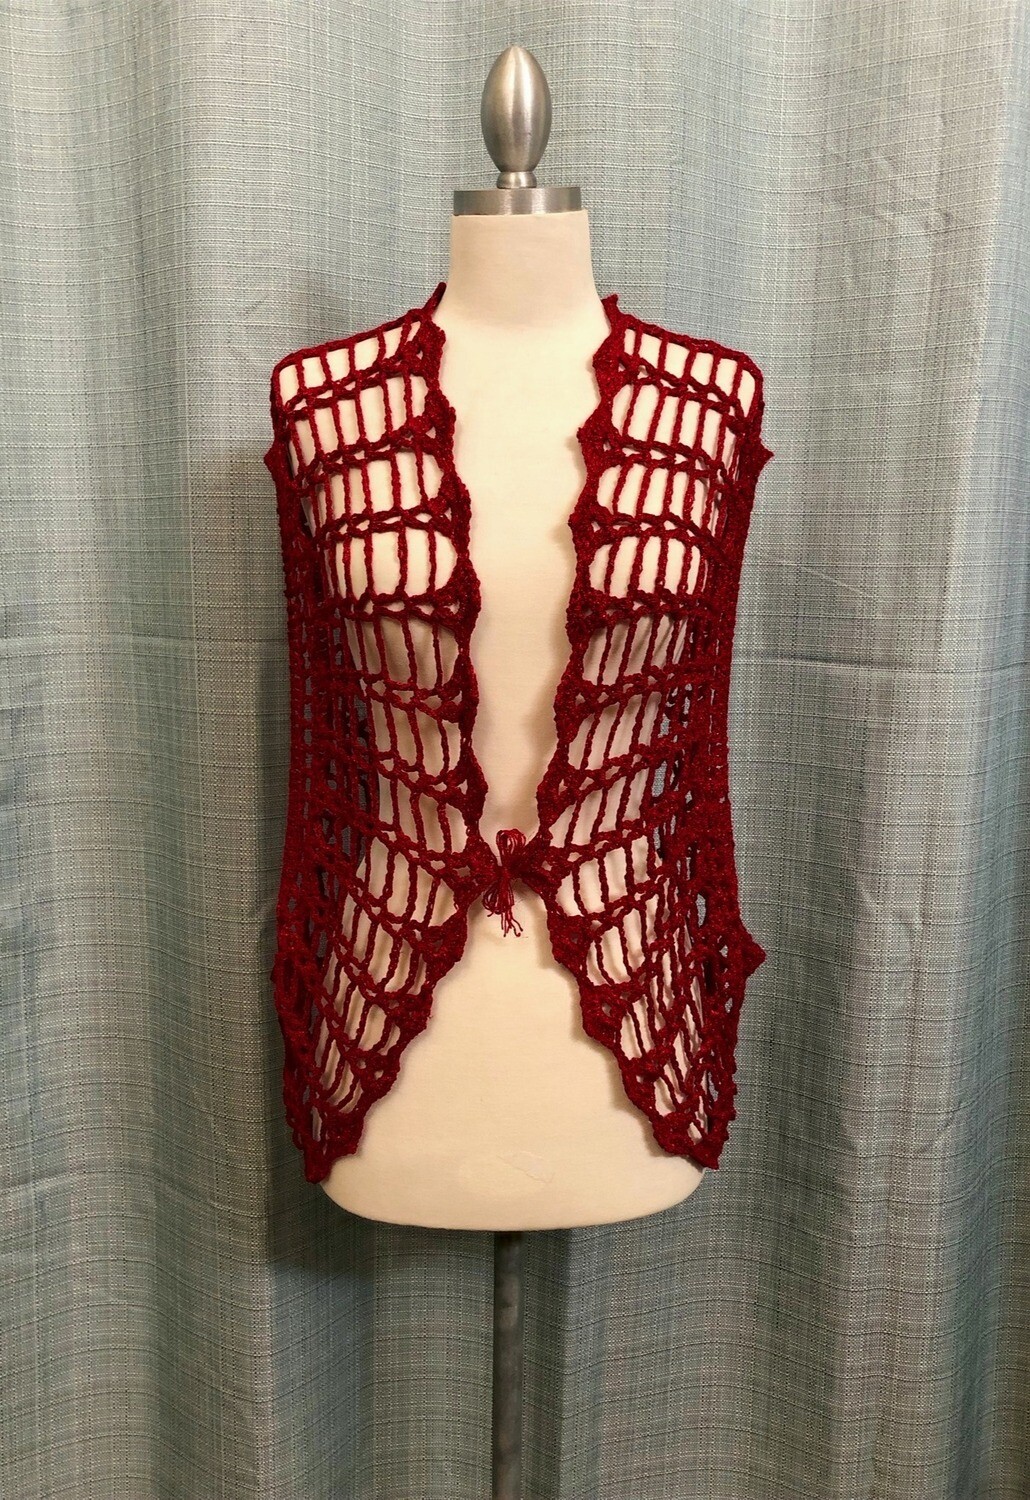 Red Velvet with Glitter Crocheted Vest Size M